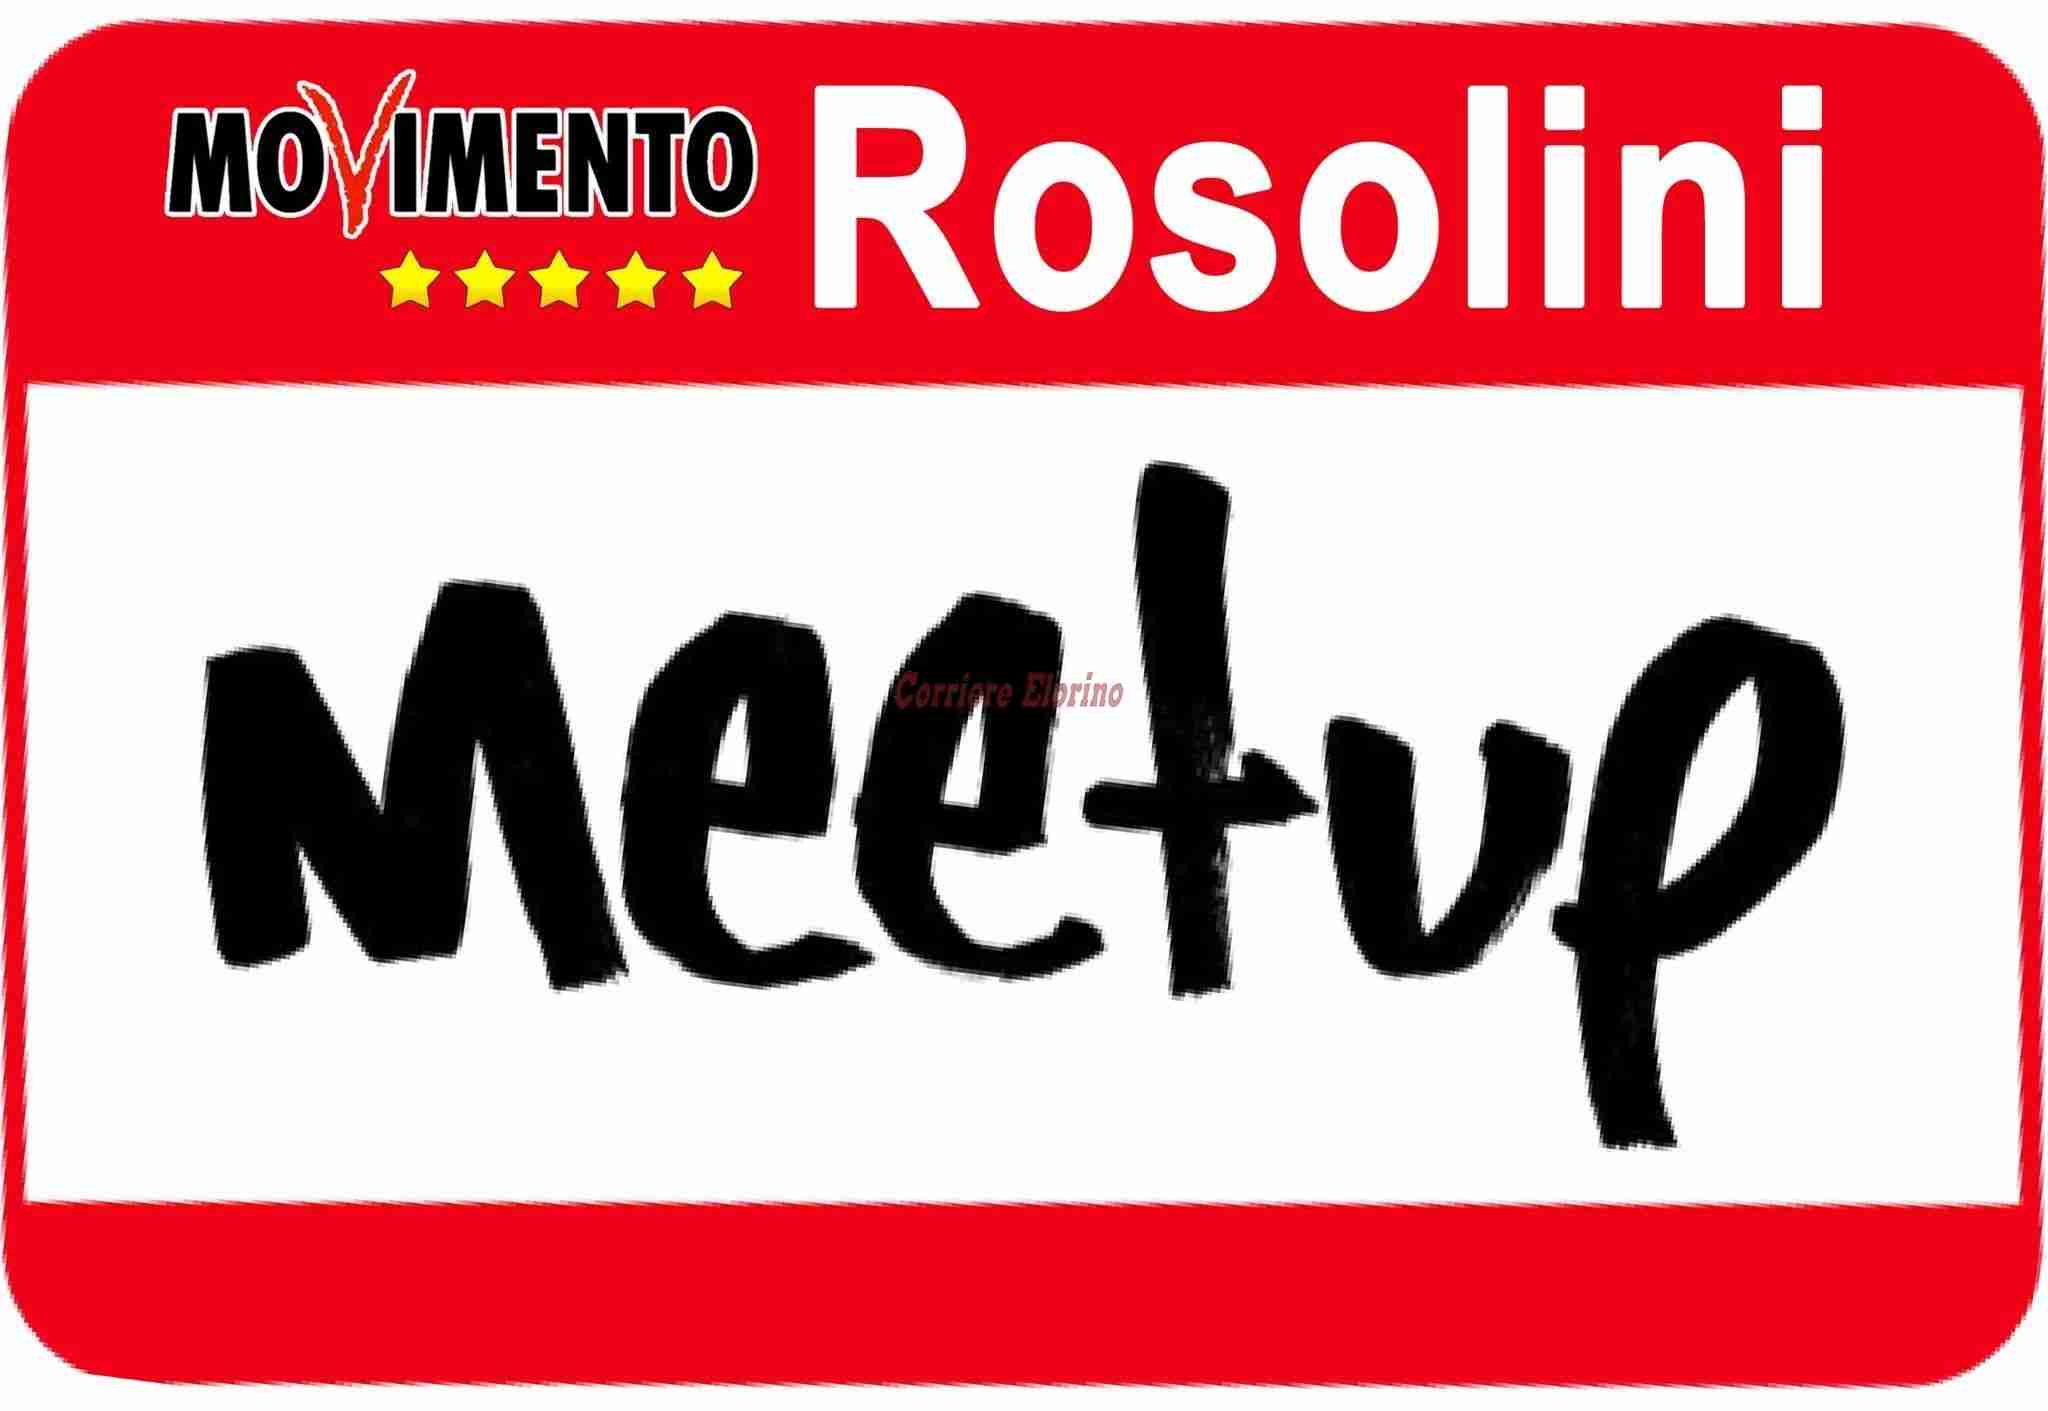 Meetup di Rosolini: “Dipendenti comunali, sindacati, forze politiche e sociali uniti per scongiurare la crisi finanziaria del nostro Comune”